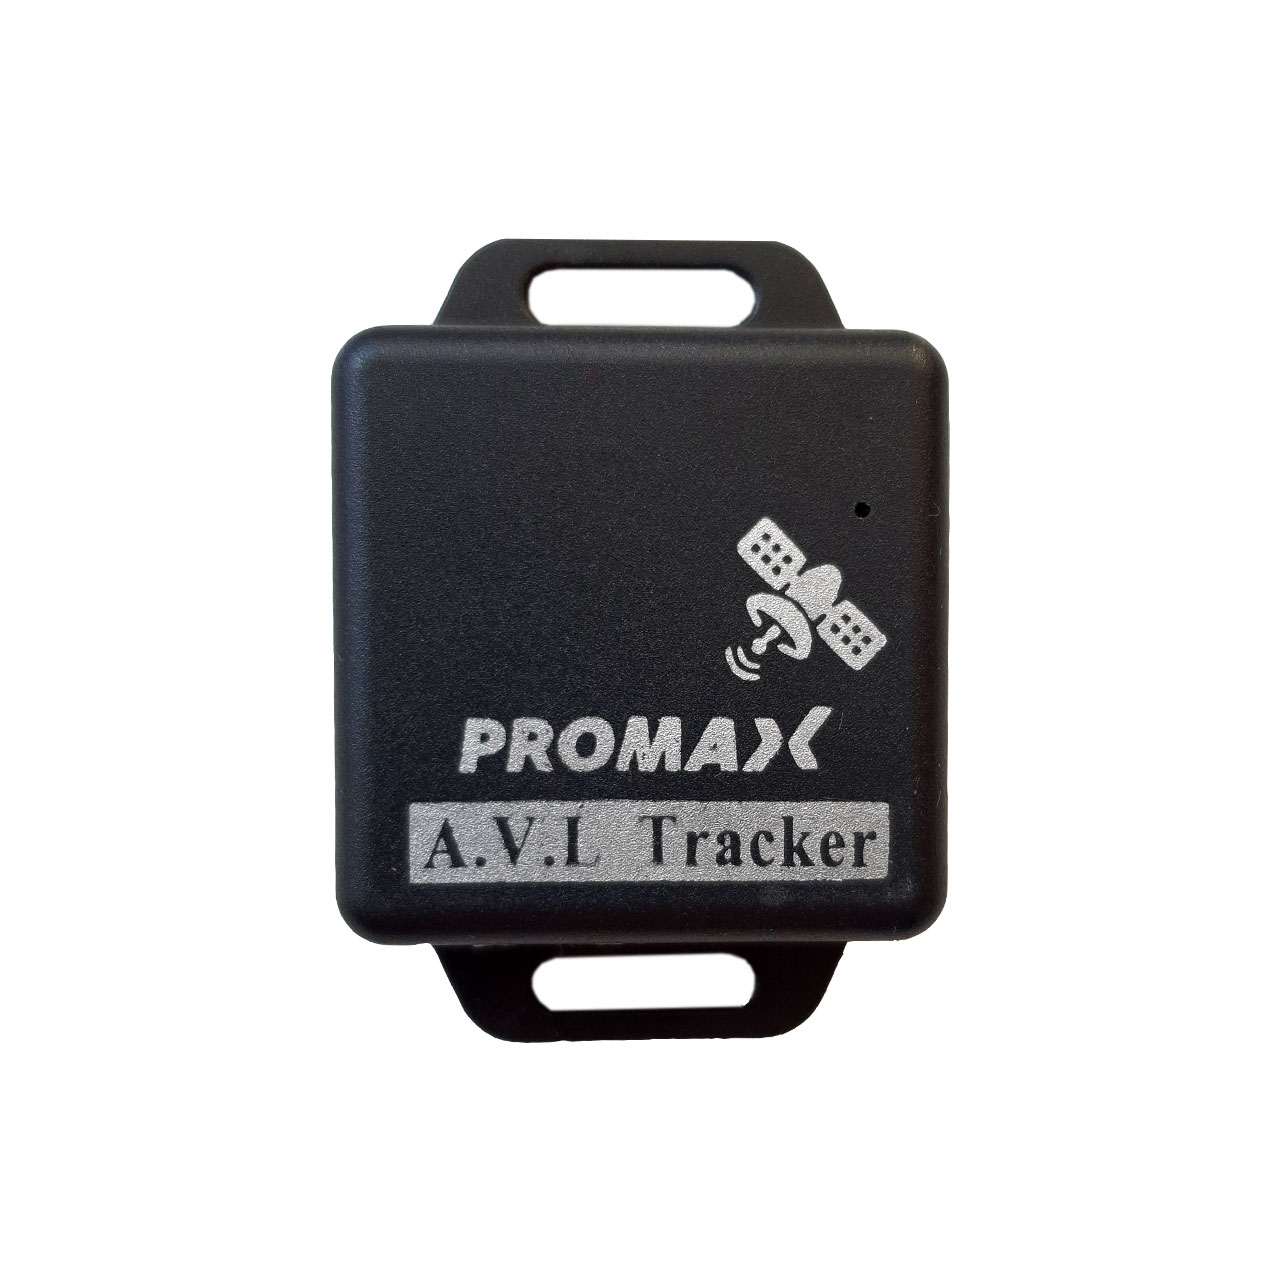 ردیاب خودرو Promax 

Car tracker Promax